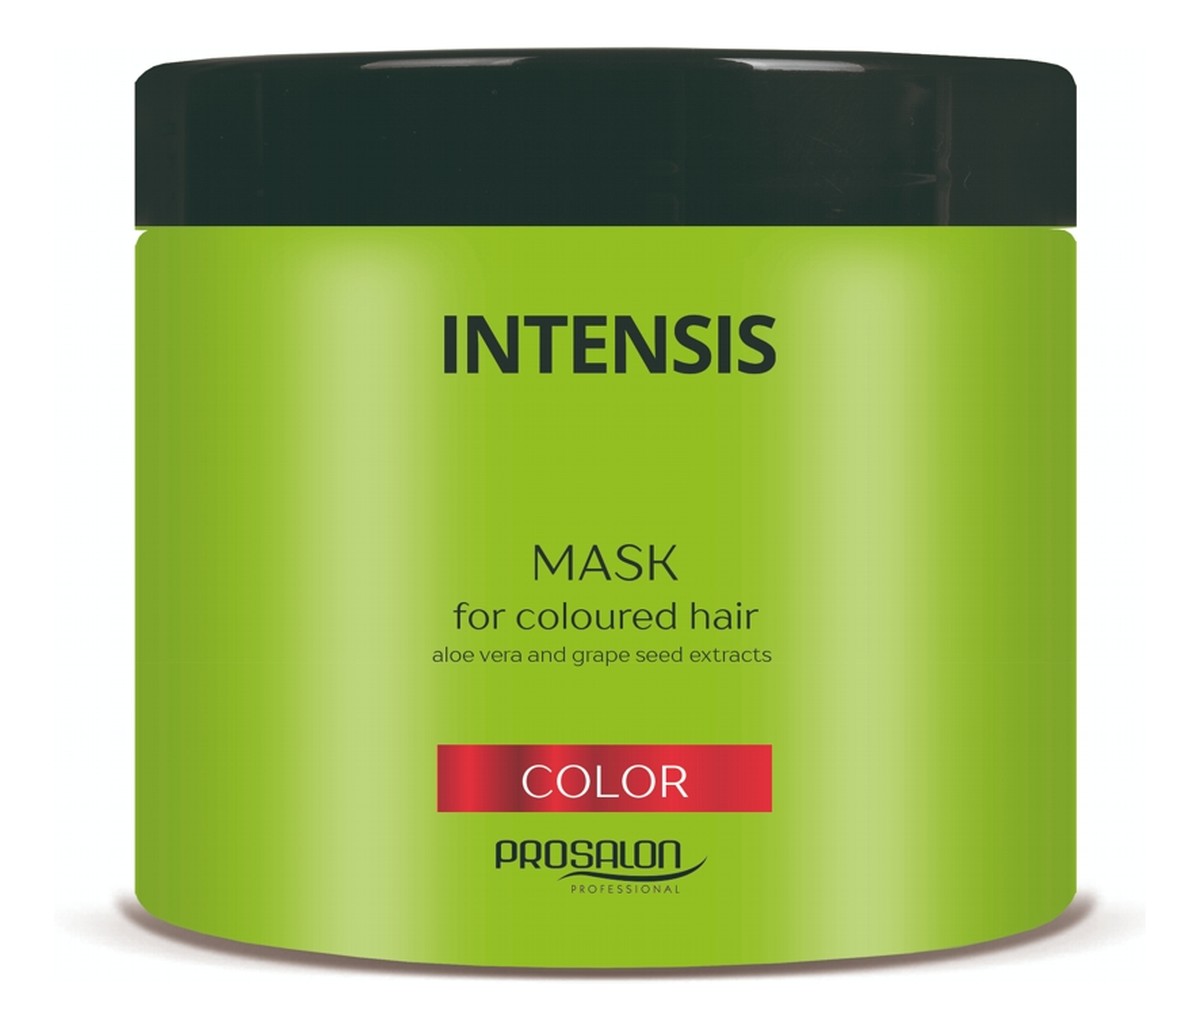 Intensis Mask For Coloured Hair maska do włosów farbowanych